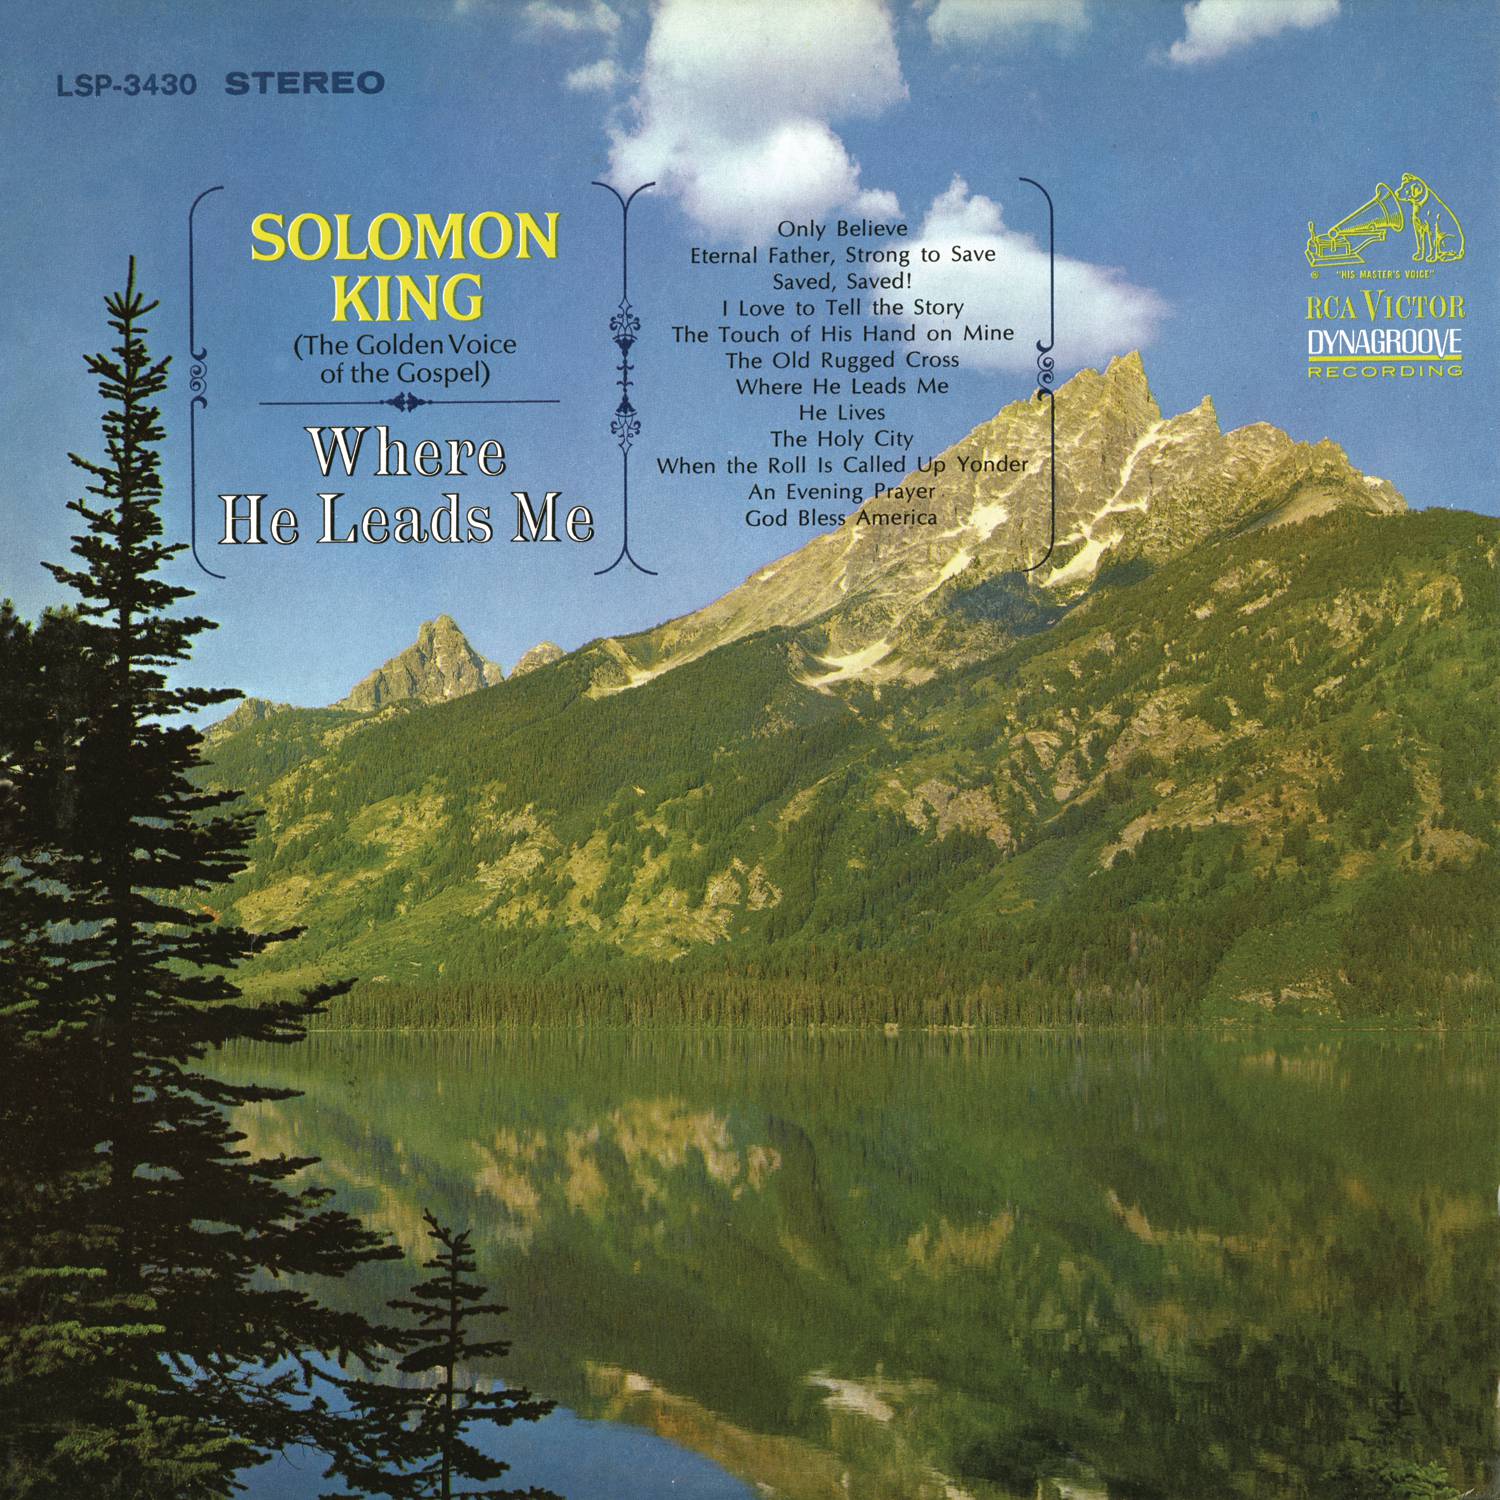 Solomon King - Where He Leads Me (1965/2015) [AcousticSounds FLAC 24bit/96kHz]